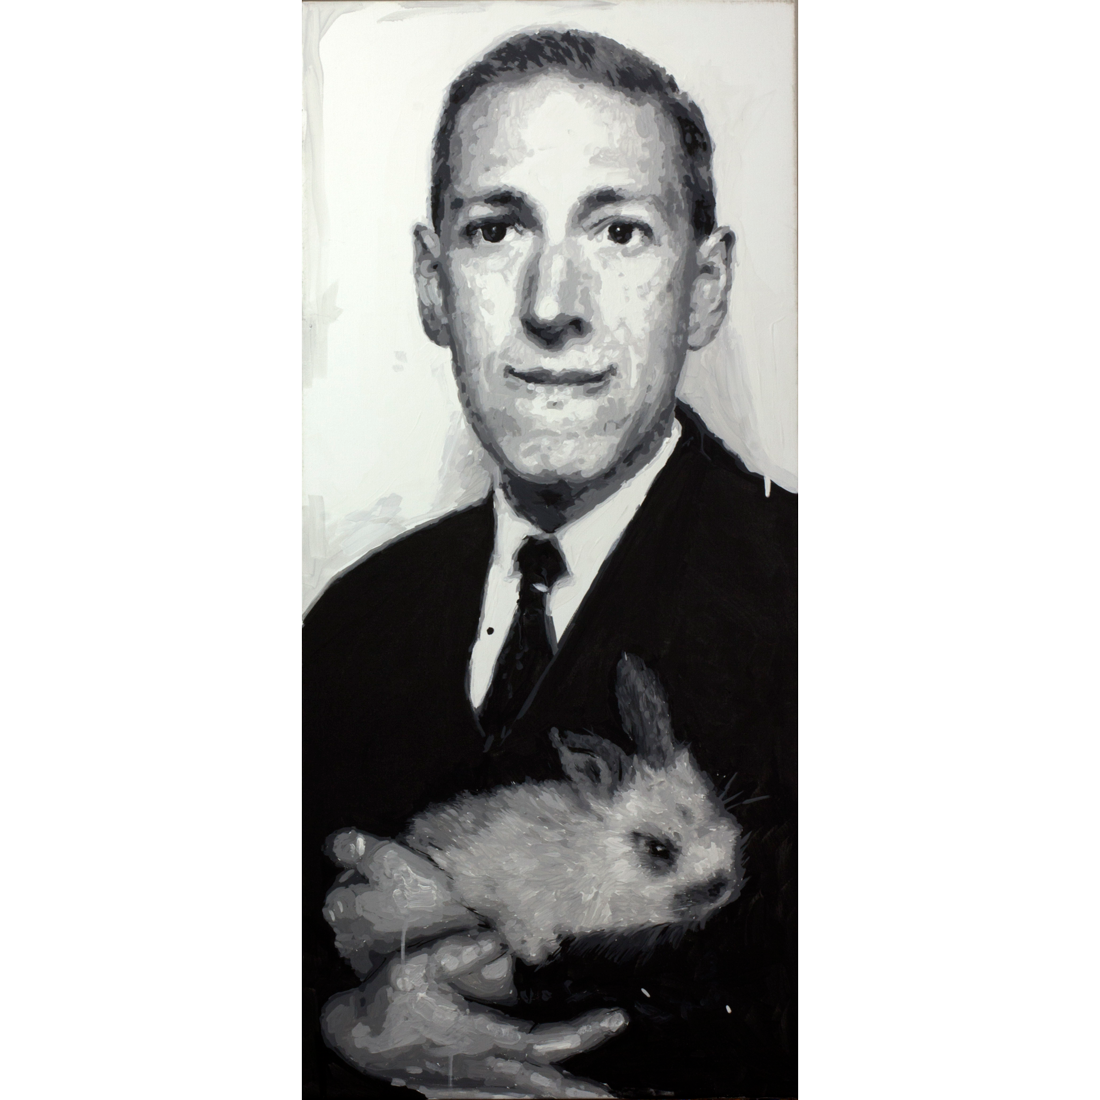 Original painting "Howard Phillips "H. P." Lovecraft" -Tie - Carnivore - Art - Formal Wear - Companion - Whiskers - Monochrome - Moustache - Dress Shirt - Portrait - Photo Caption - Vintage Clothing - Facial Hair